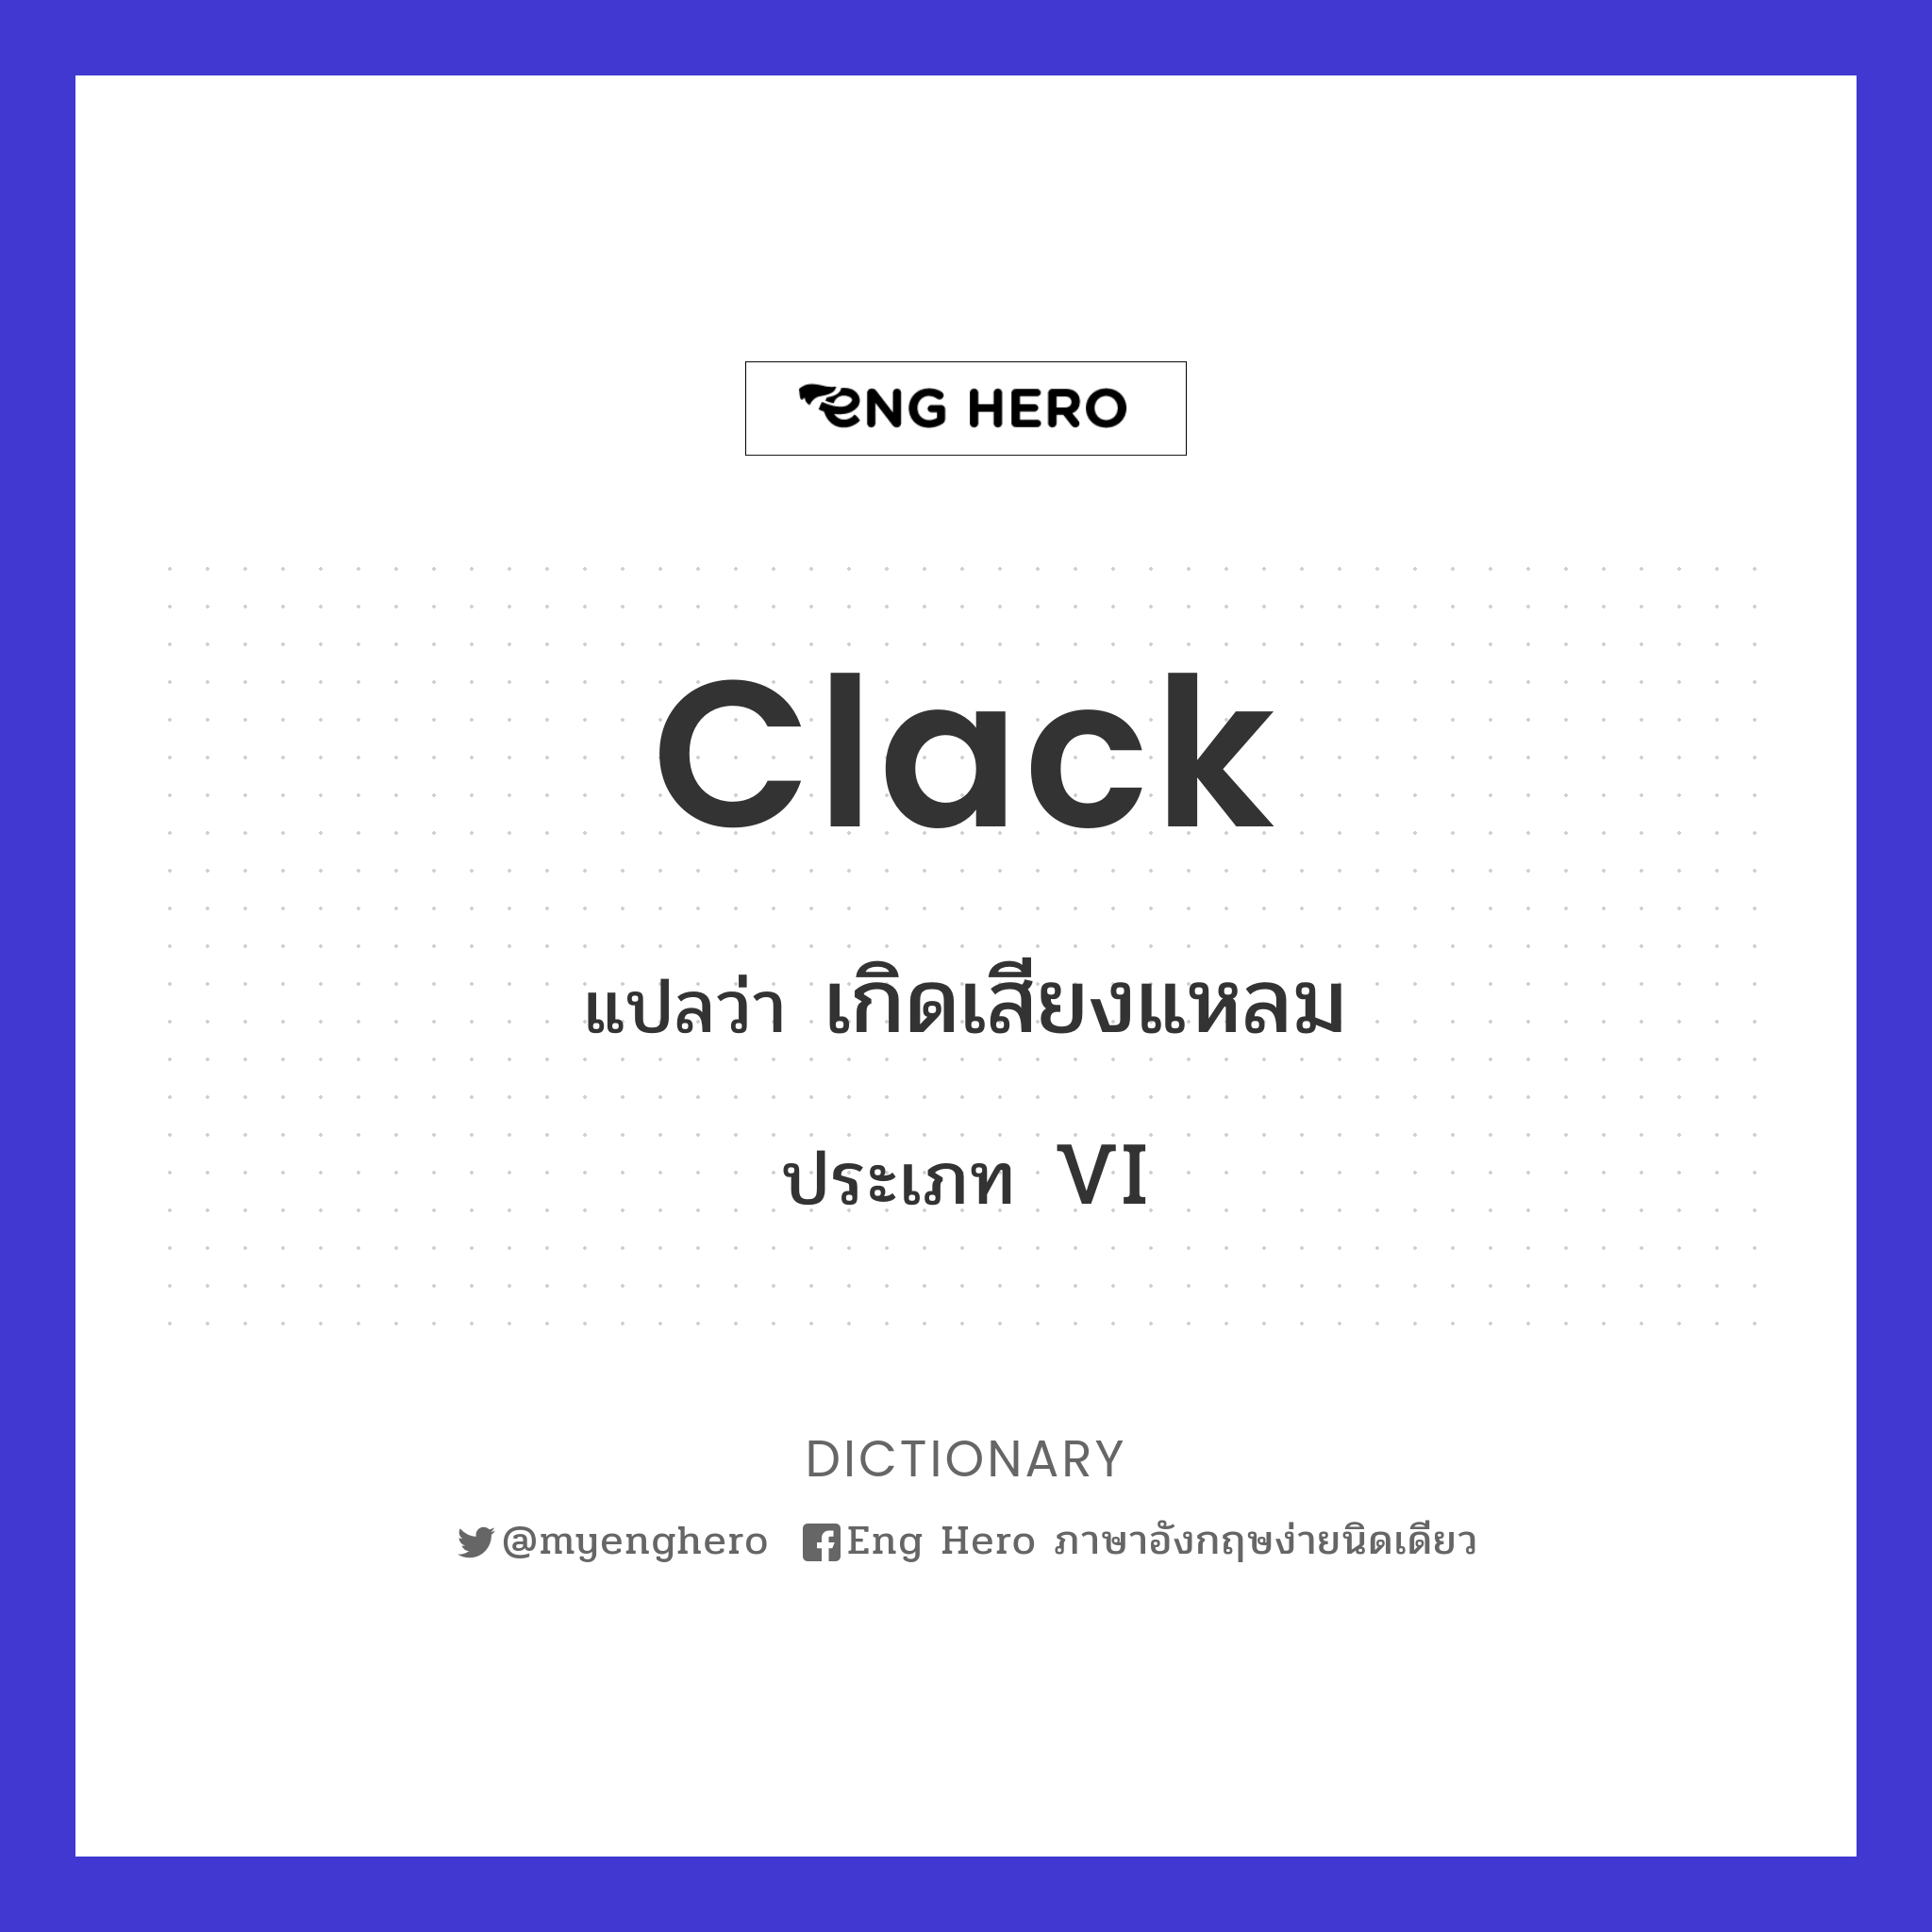 clack